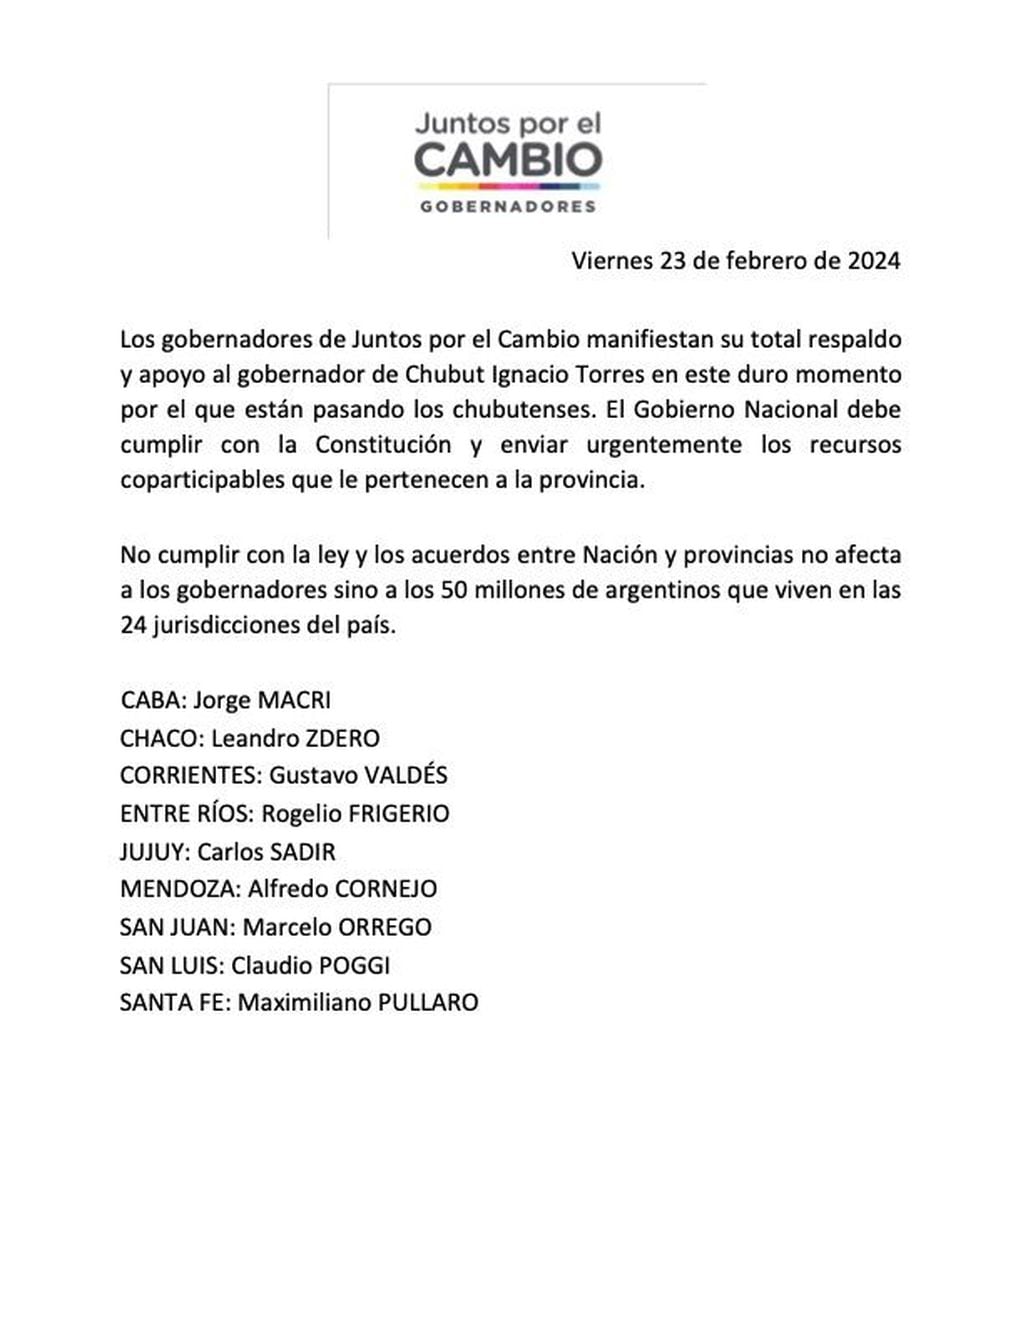 El comunicado de los gobernadores de Juntos por el Cambio respaldando al chubutense Ignacio Torres.